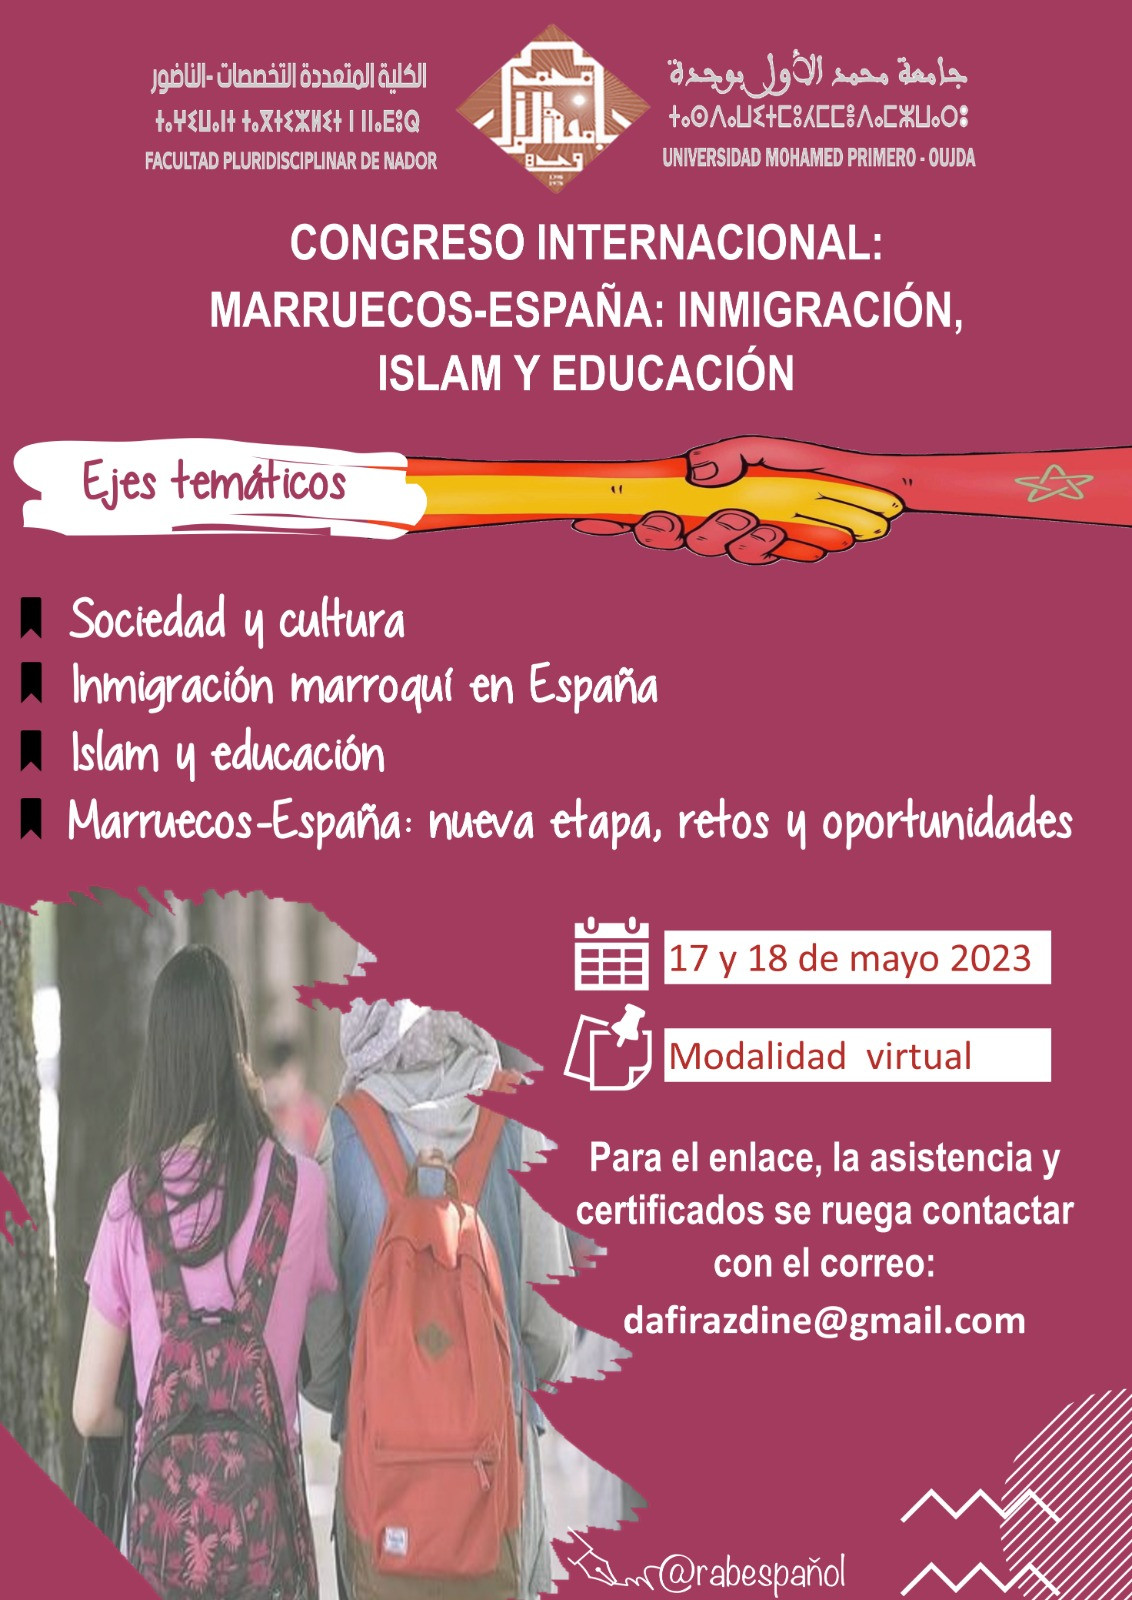 CONGRESO INTERNACIONAL: MARRUECOS-ESPANA: INMIGRACION, ISLAM Y EDUCACION